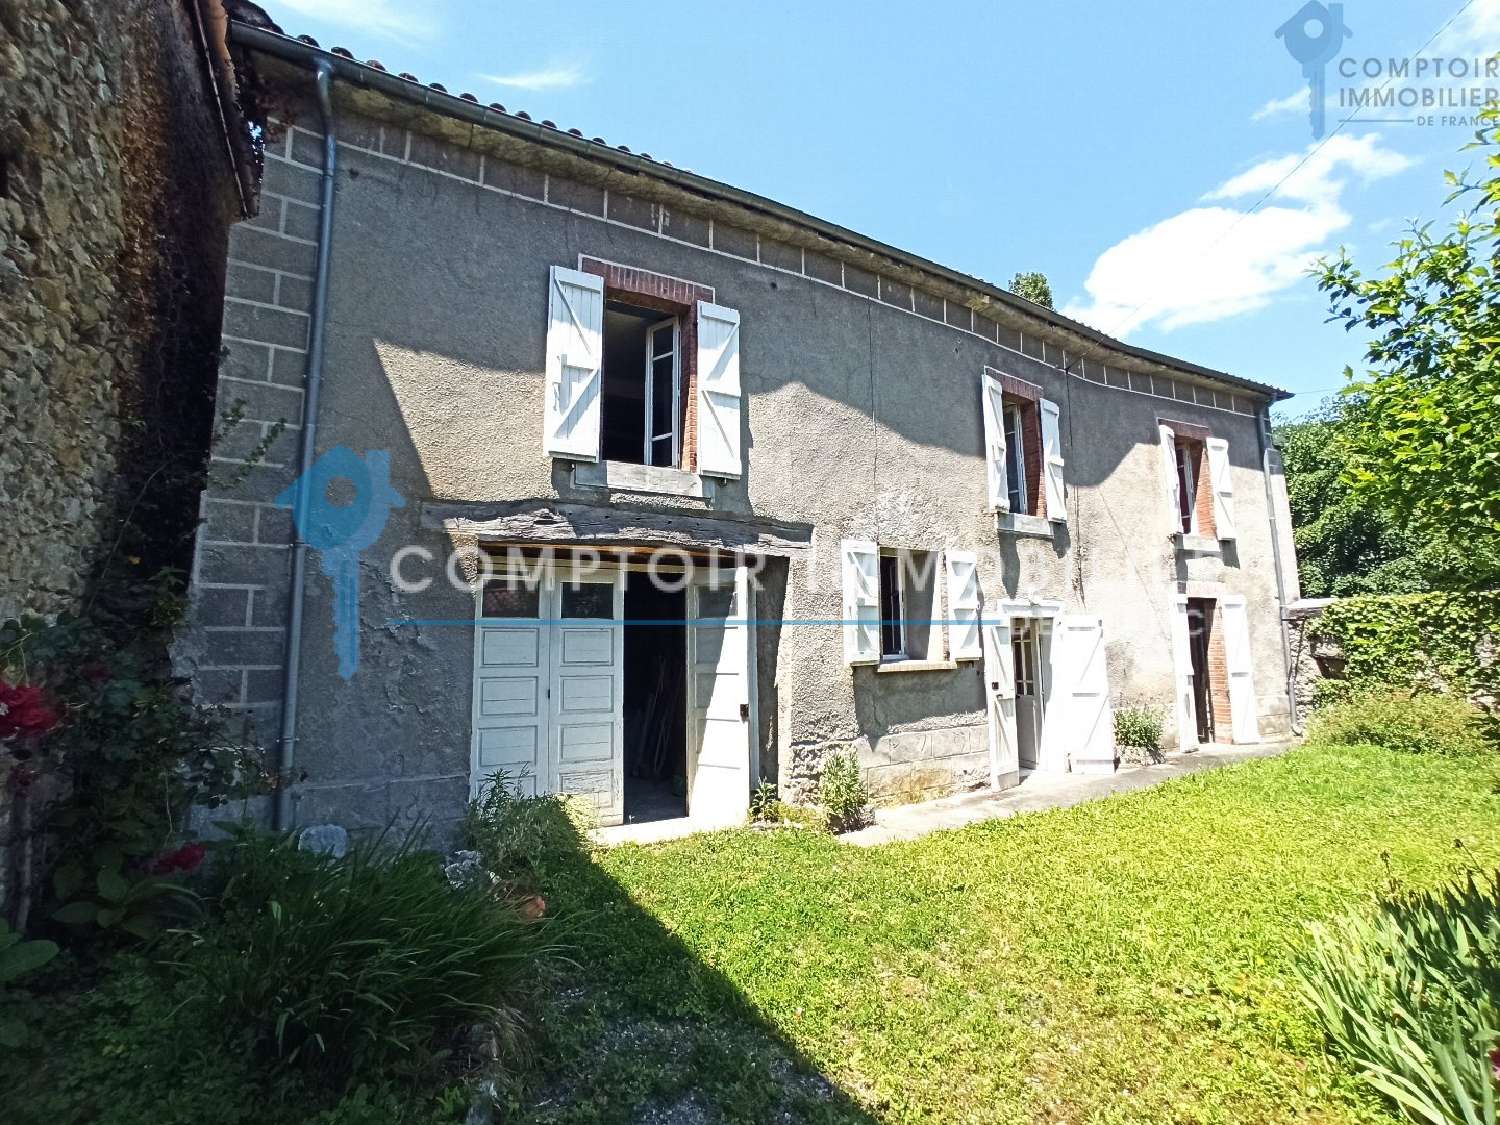  à vendre maison Bertren Hautes-Pyrénées 1